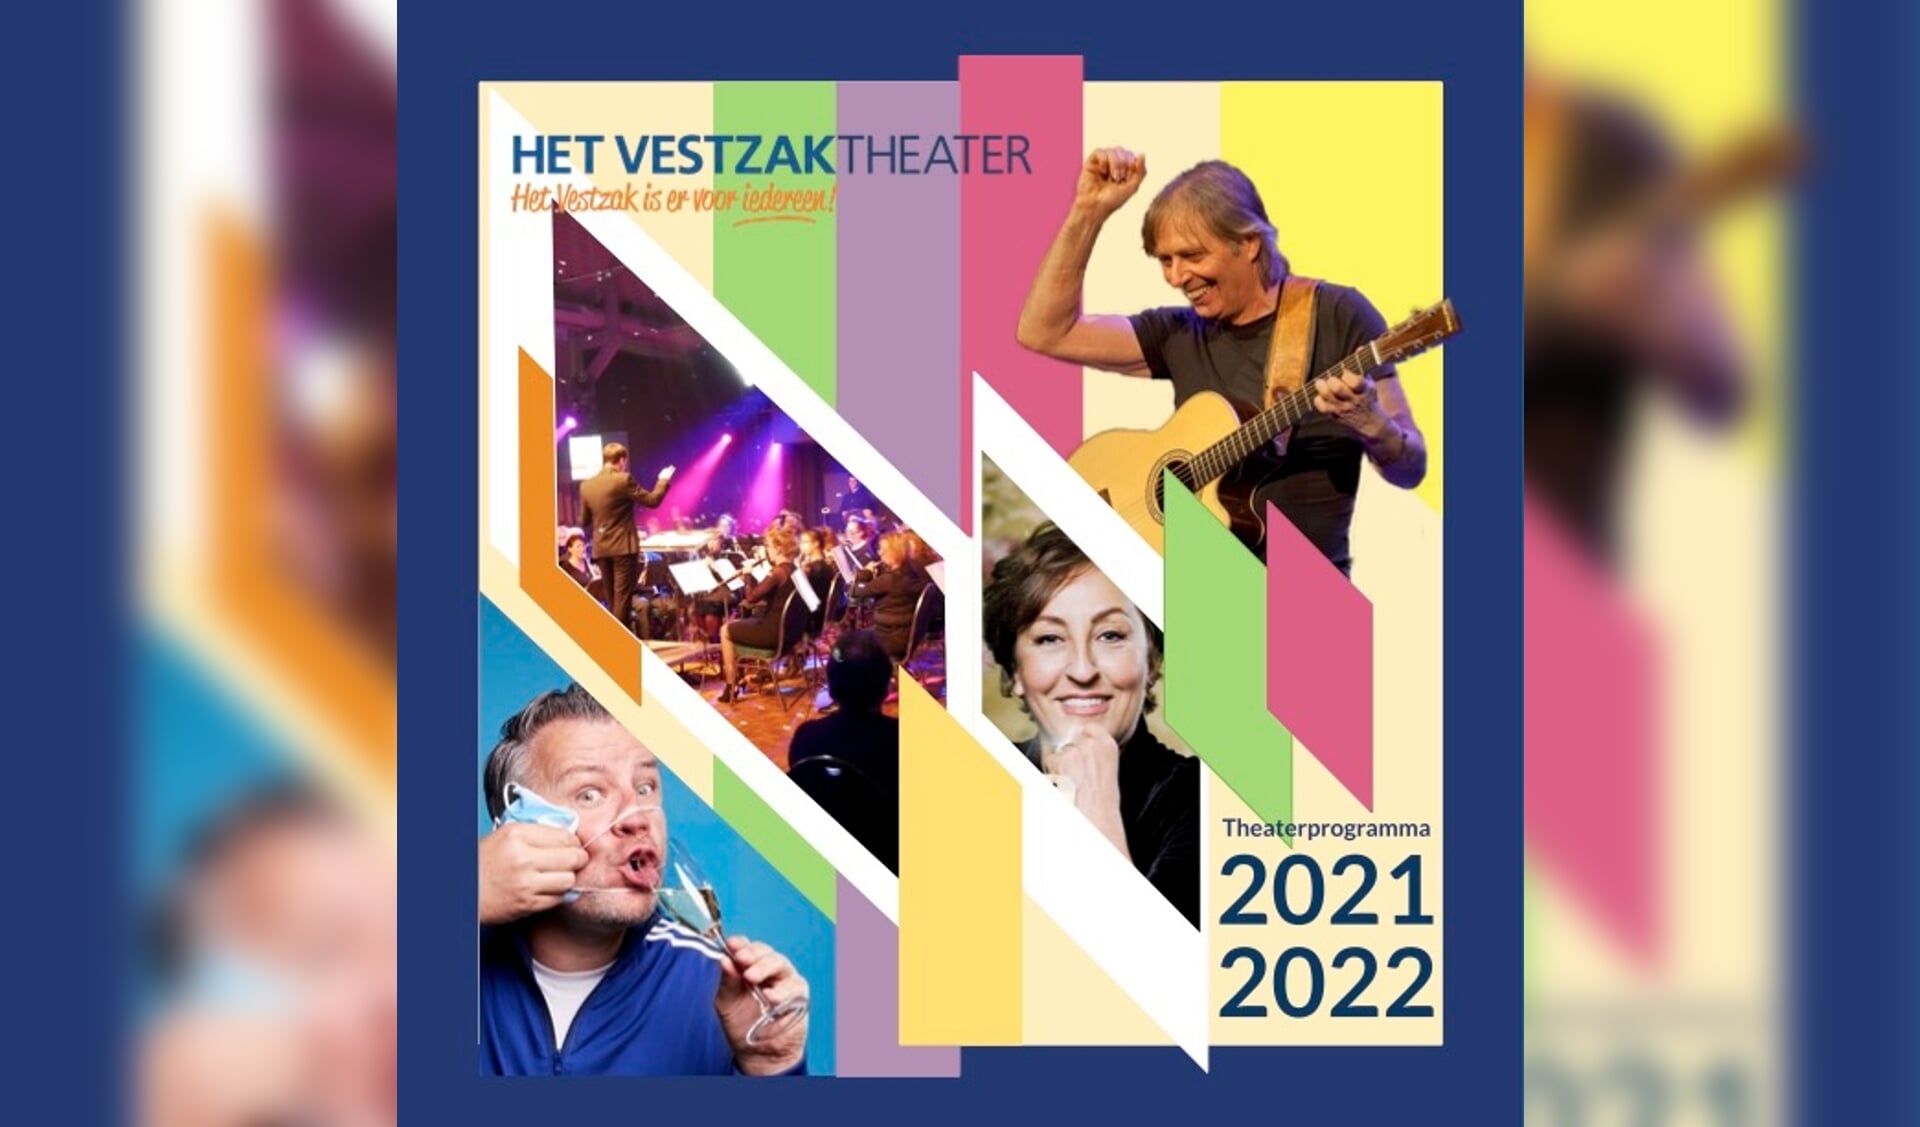 Theaterprogramma 2021/2022